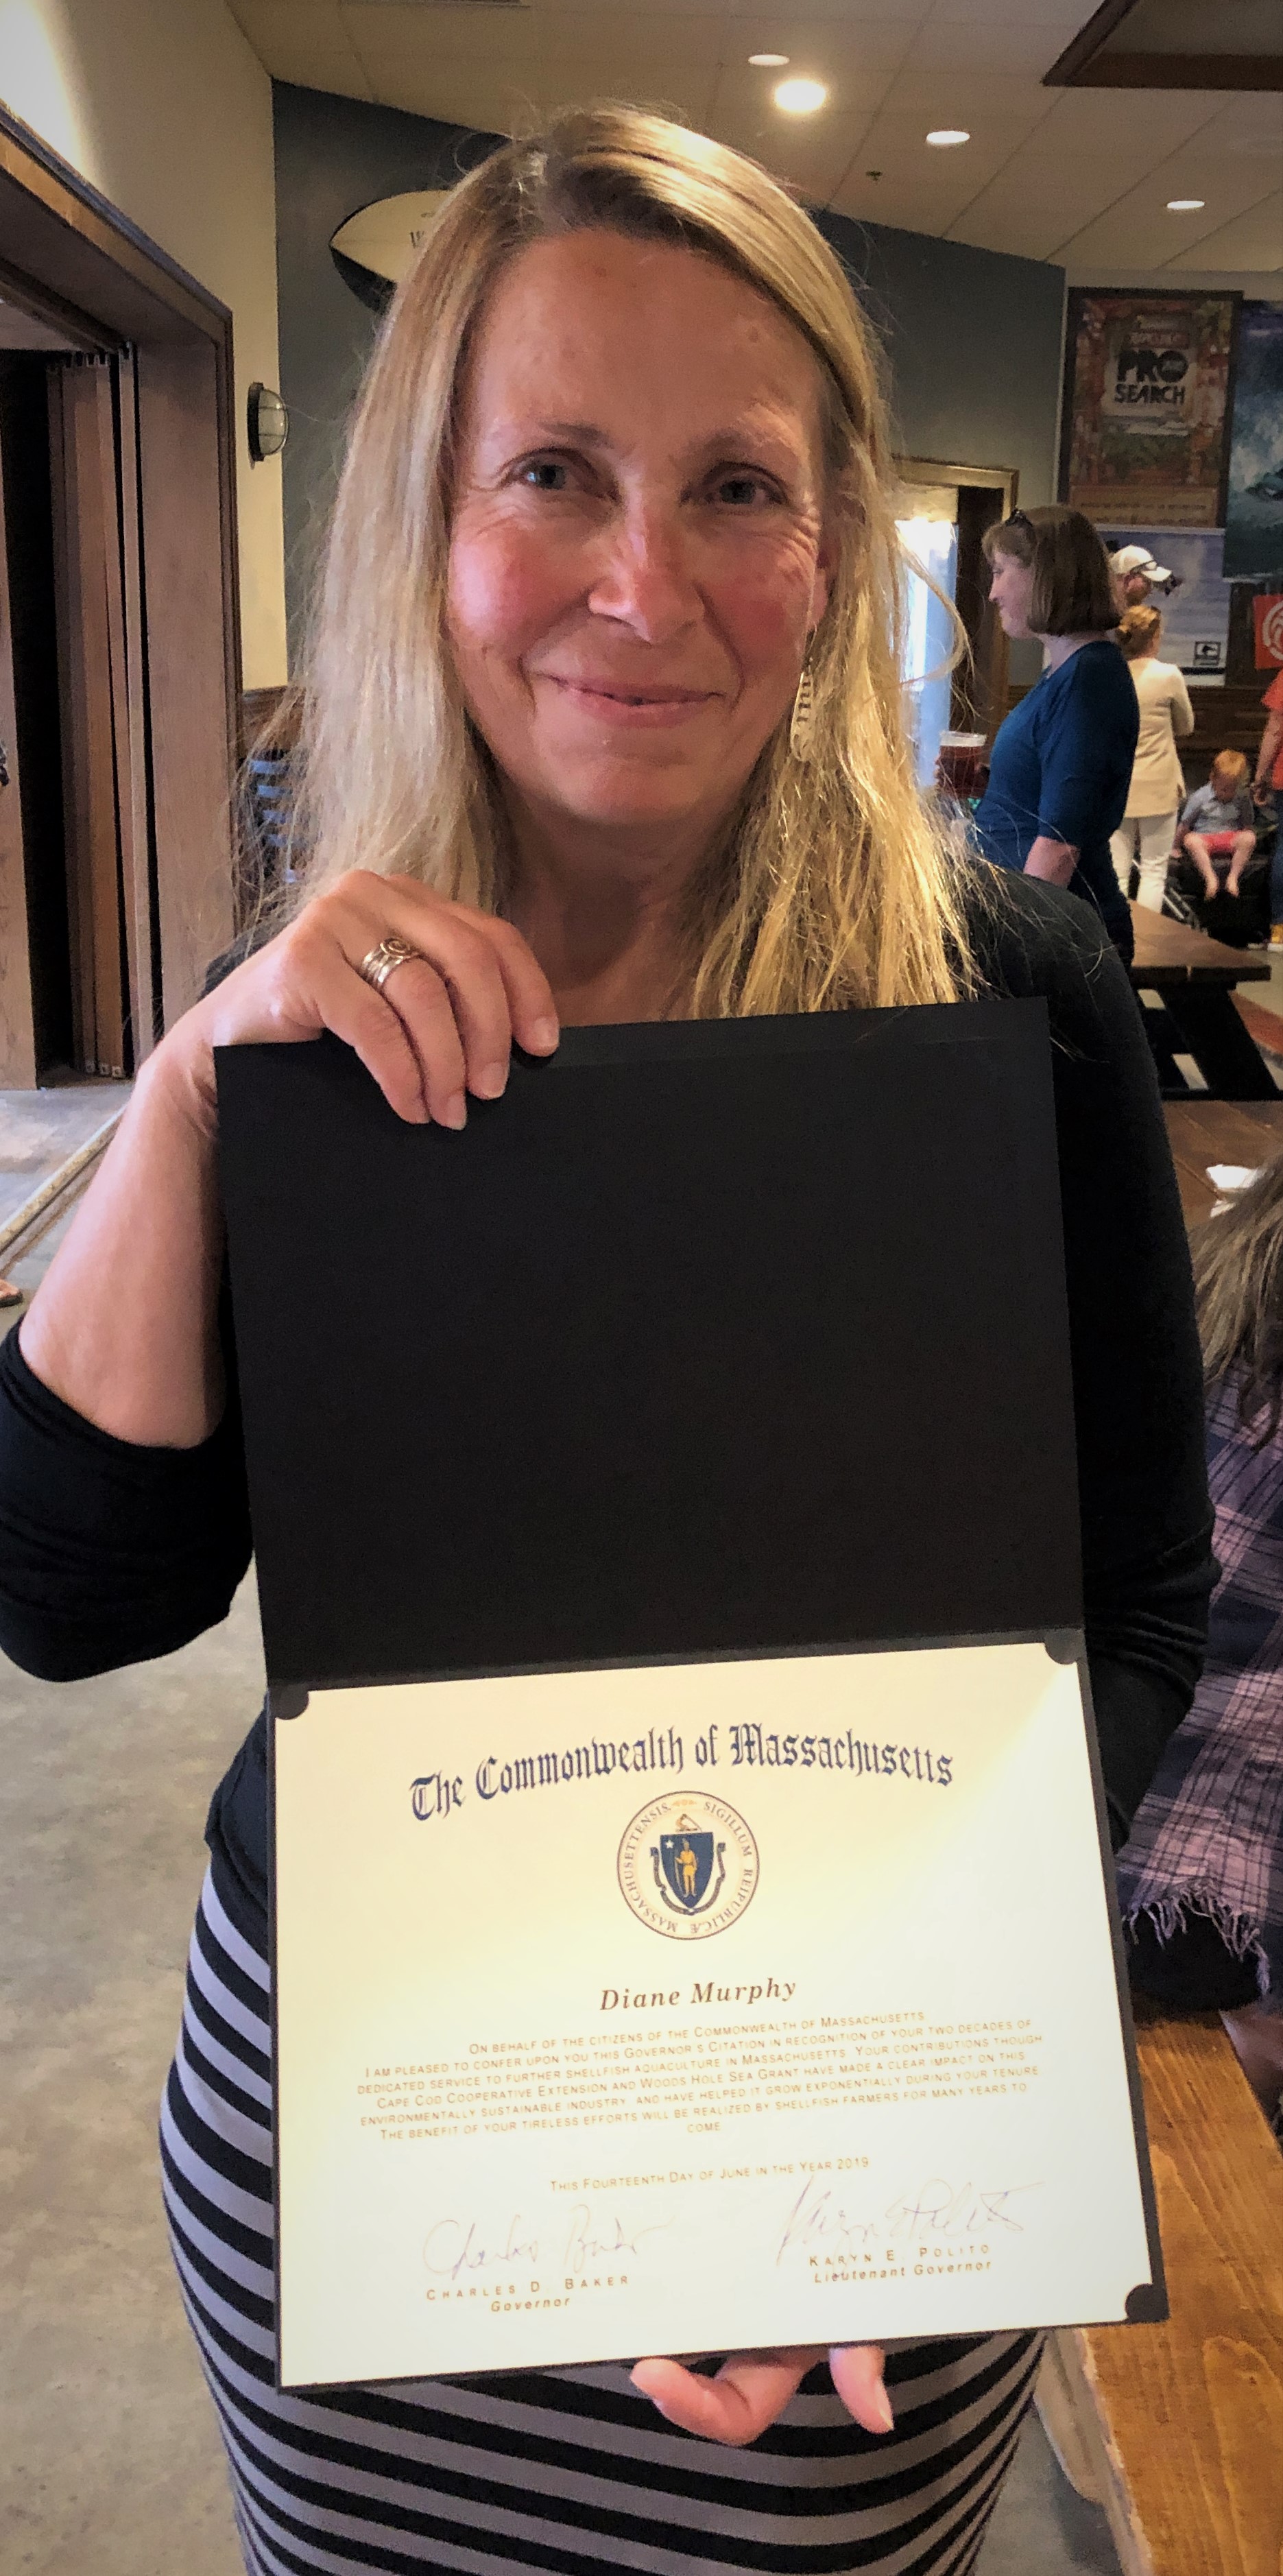 Diane Murphy holding her citation from Massachusetts Governor Charlie Baker and Lt. Gov. Karyn Polito.